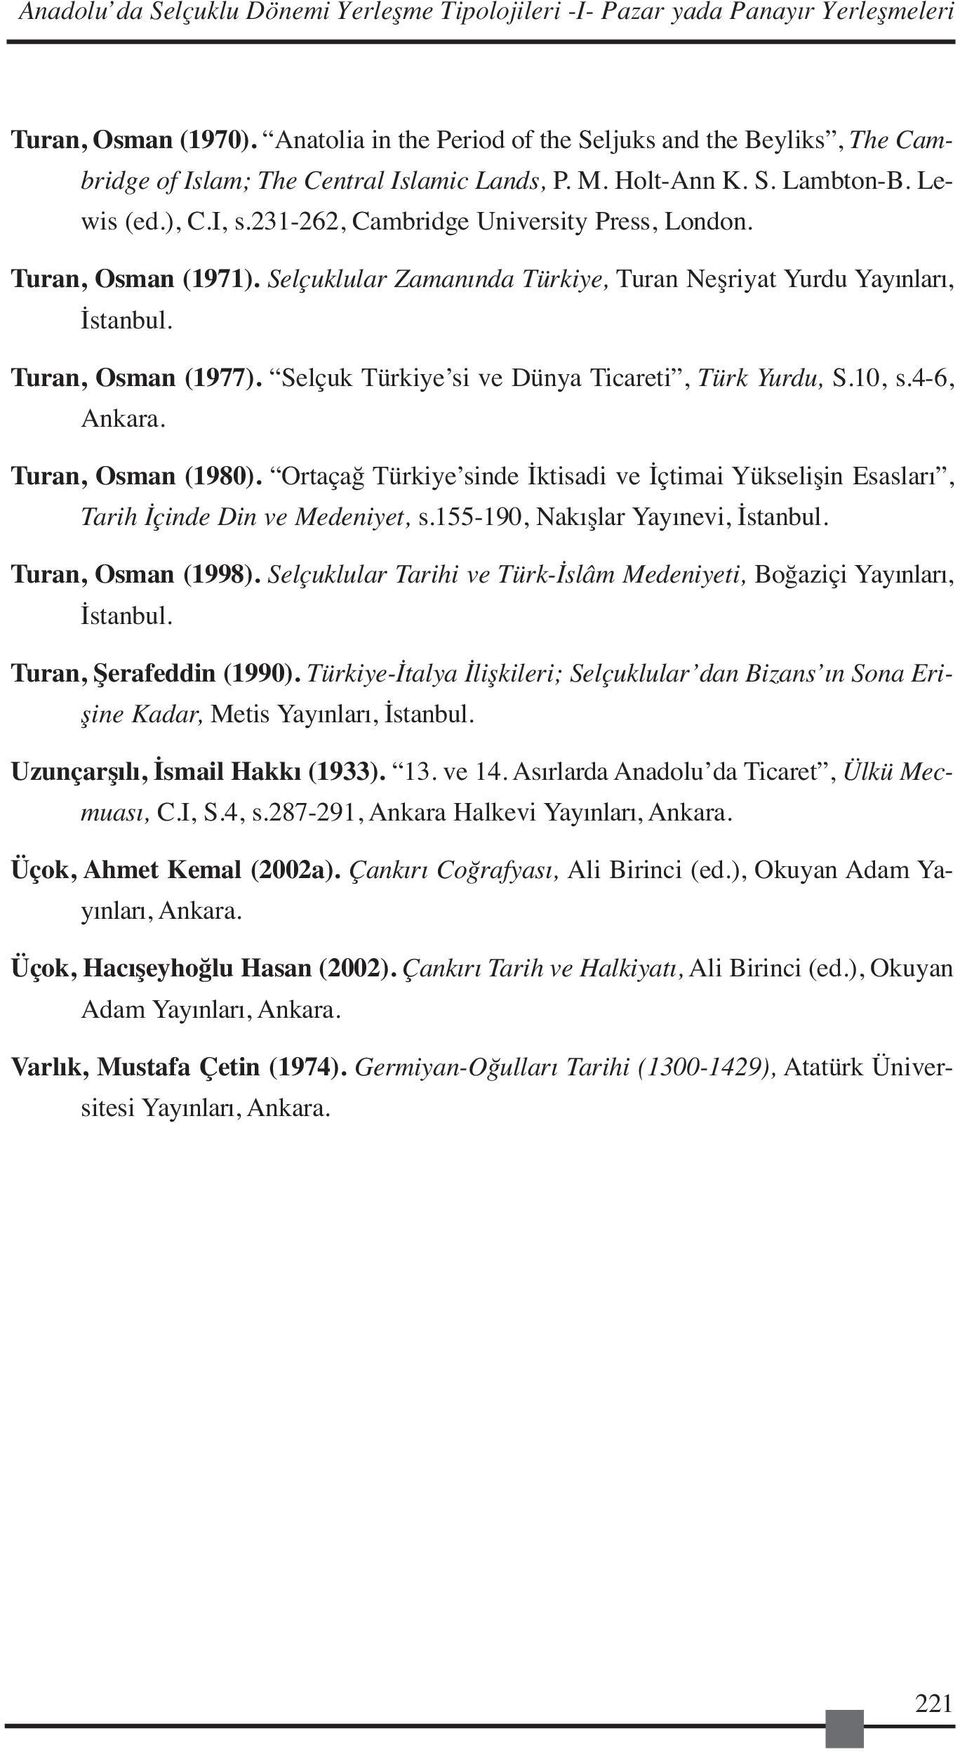 231-262, Cambridge University Press, London. Turan, Osman (1971). Selçuklular Zamanında Türkiye, Turan Neşriyat Yurdu Yayınları, İstanbul. Turan, Osman (1977).